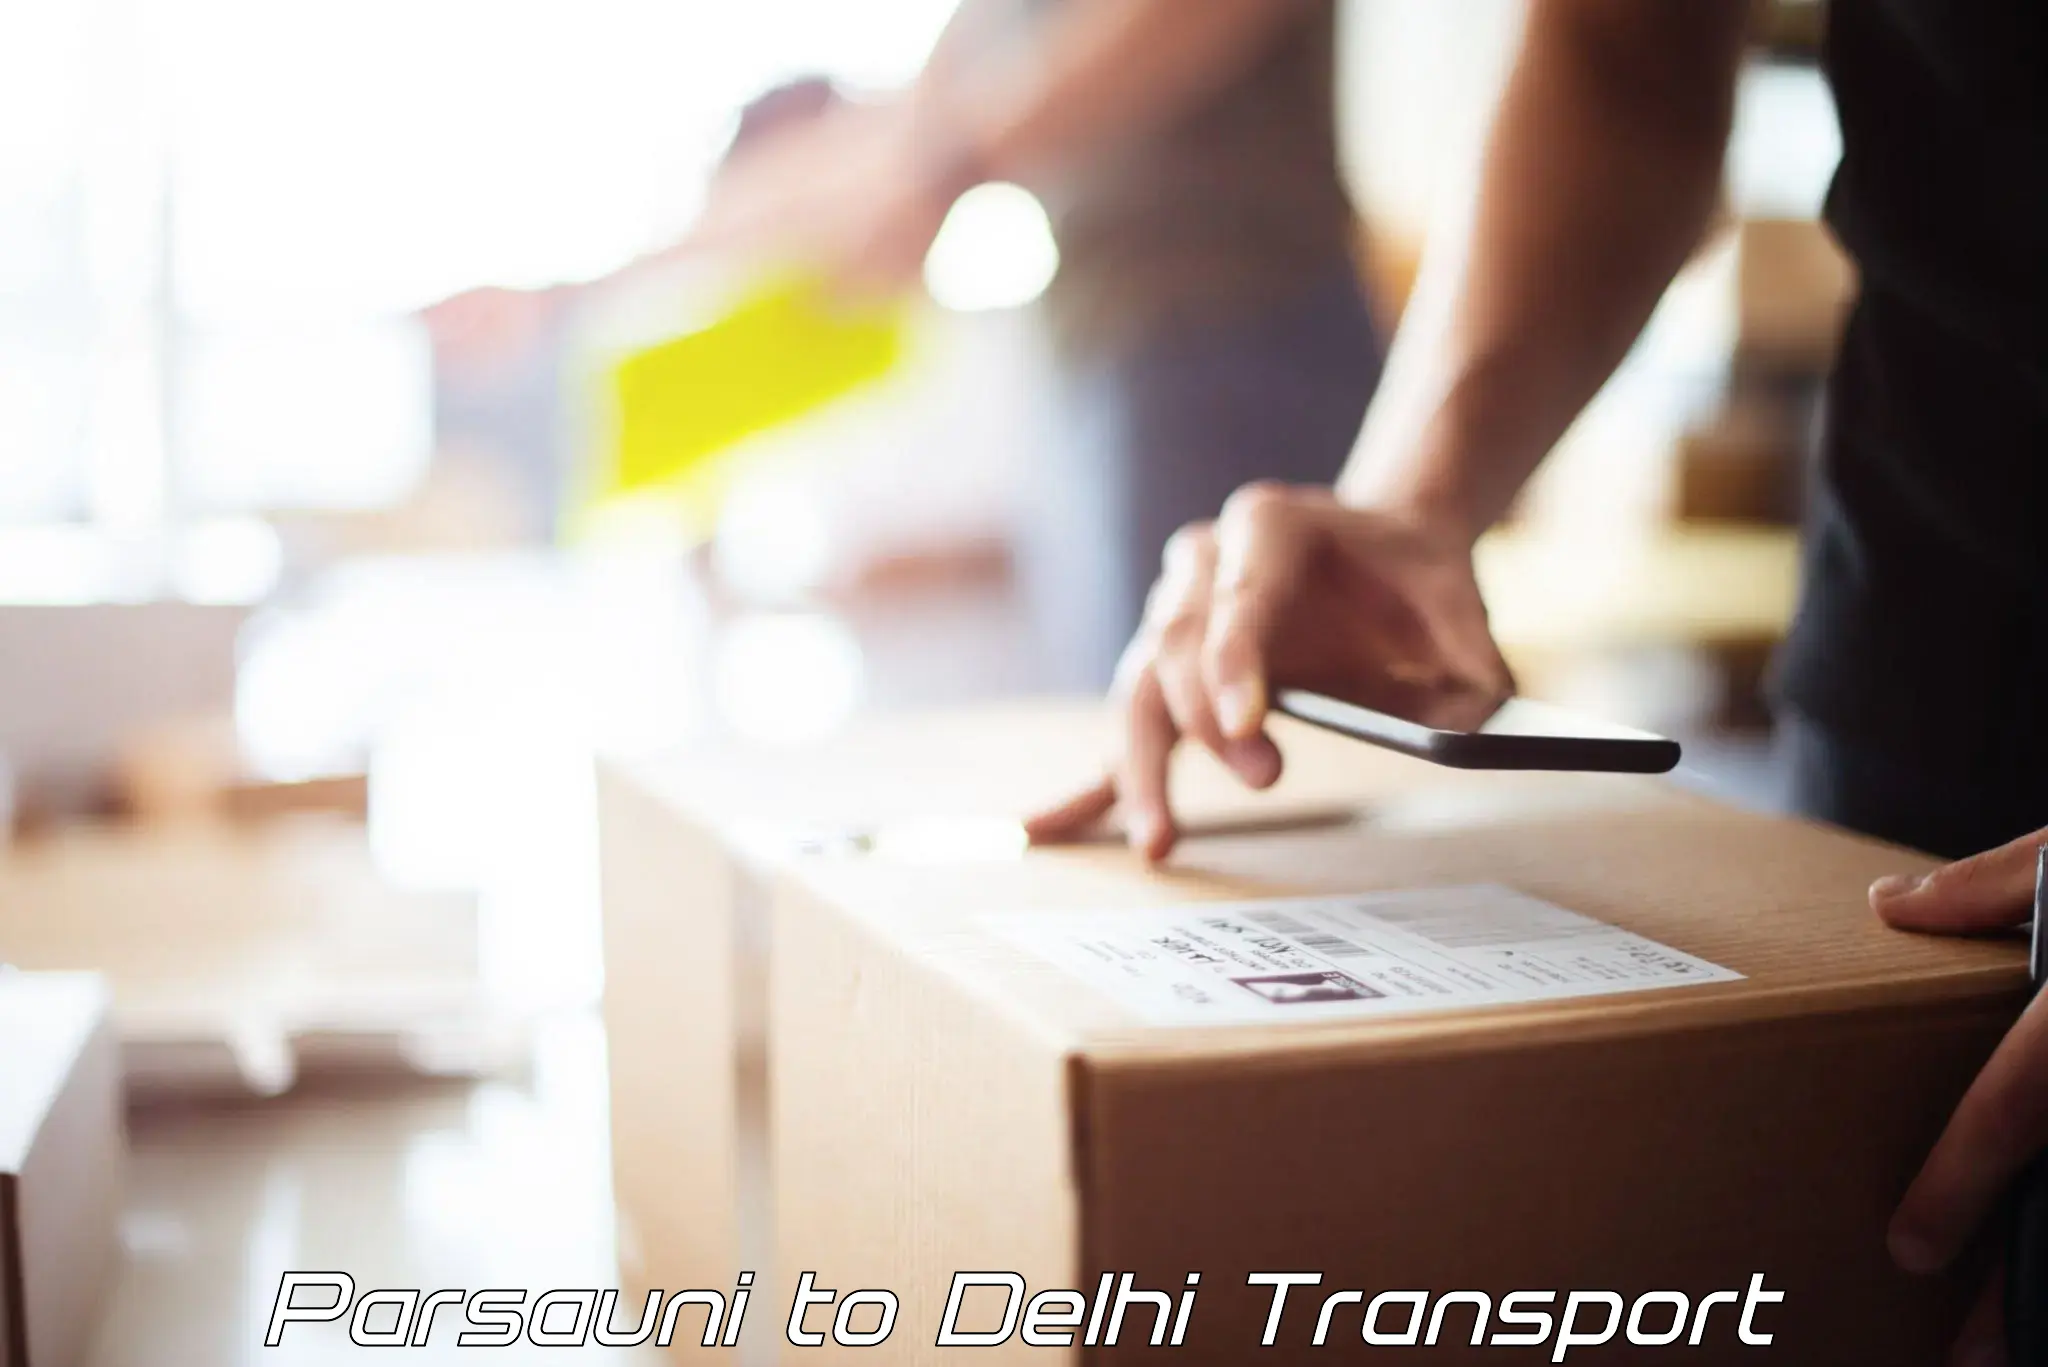 Interstate goods transport in Parsauni to Delhi